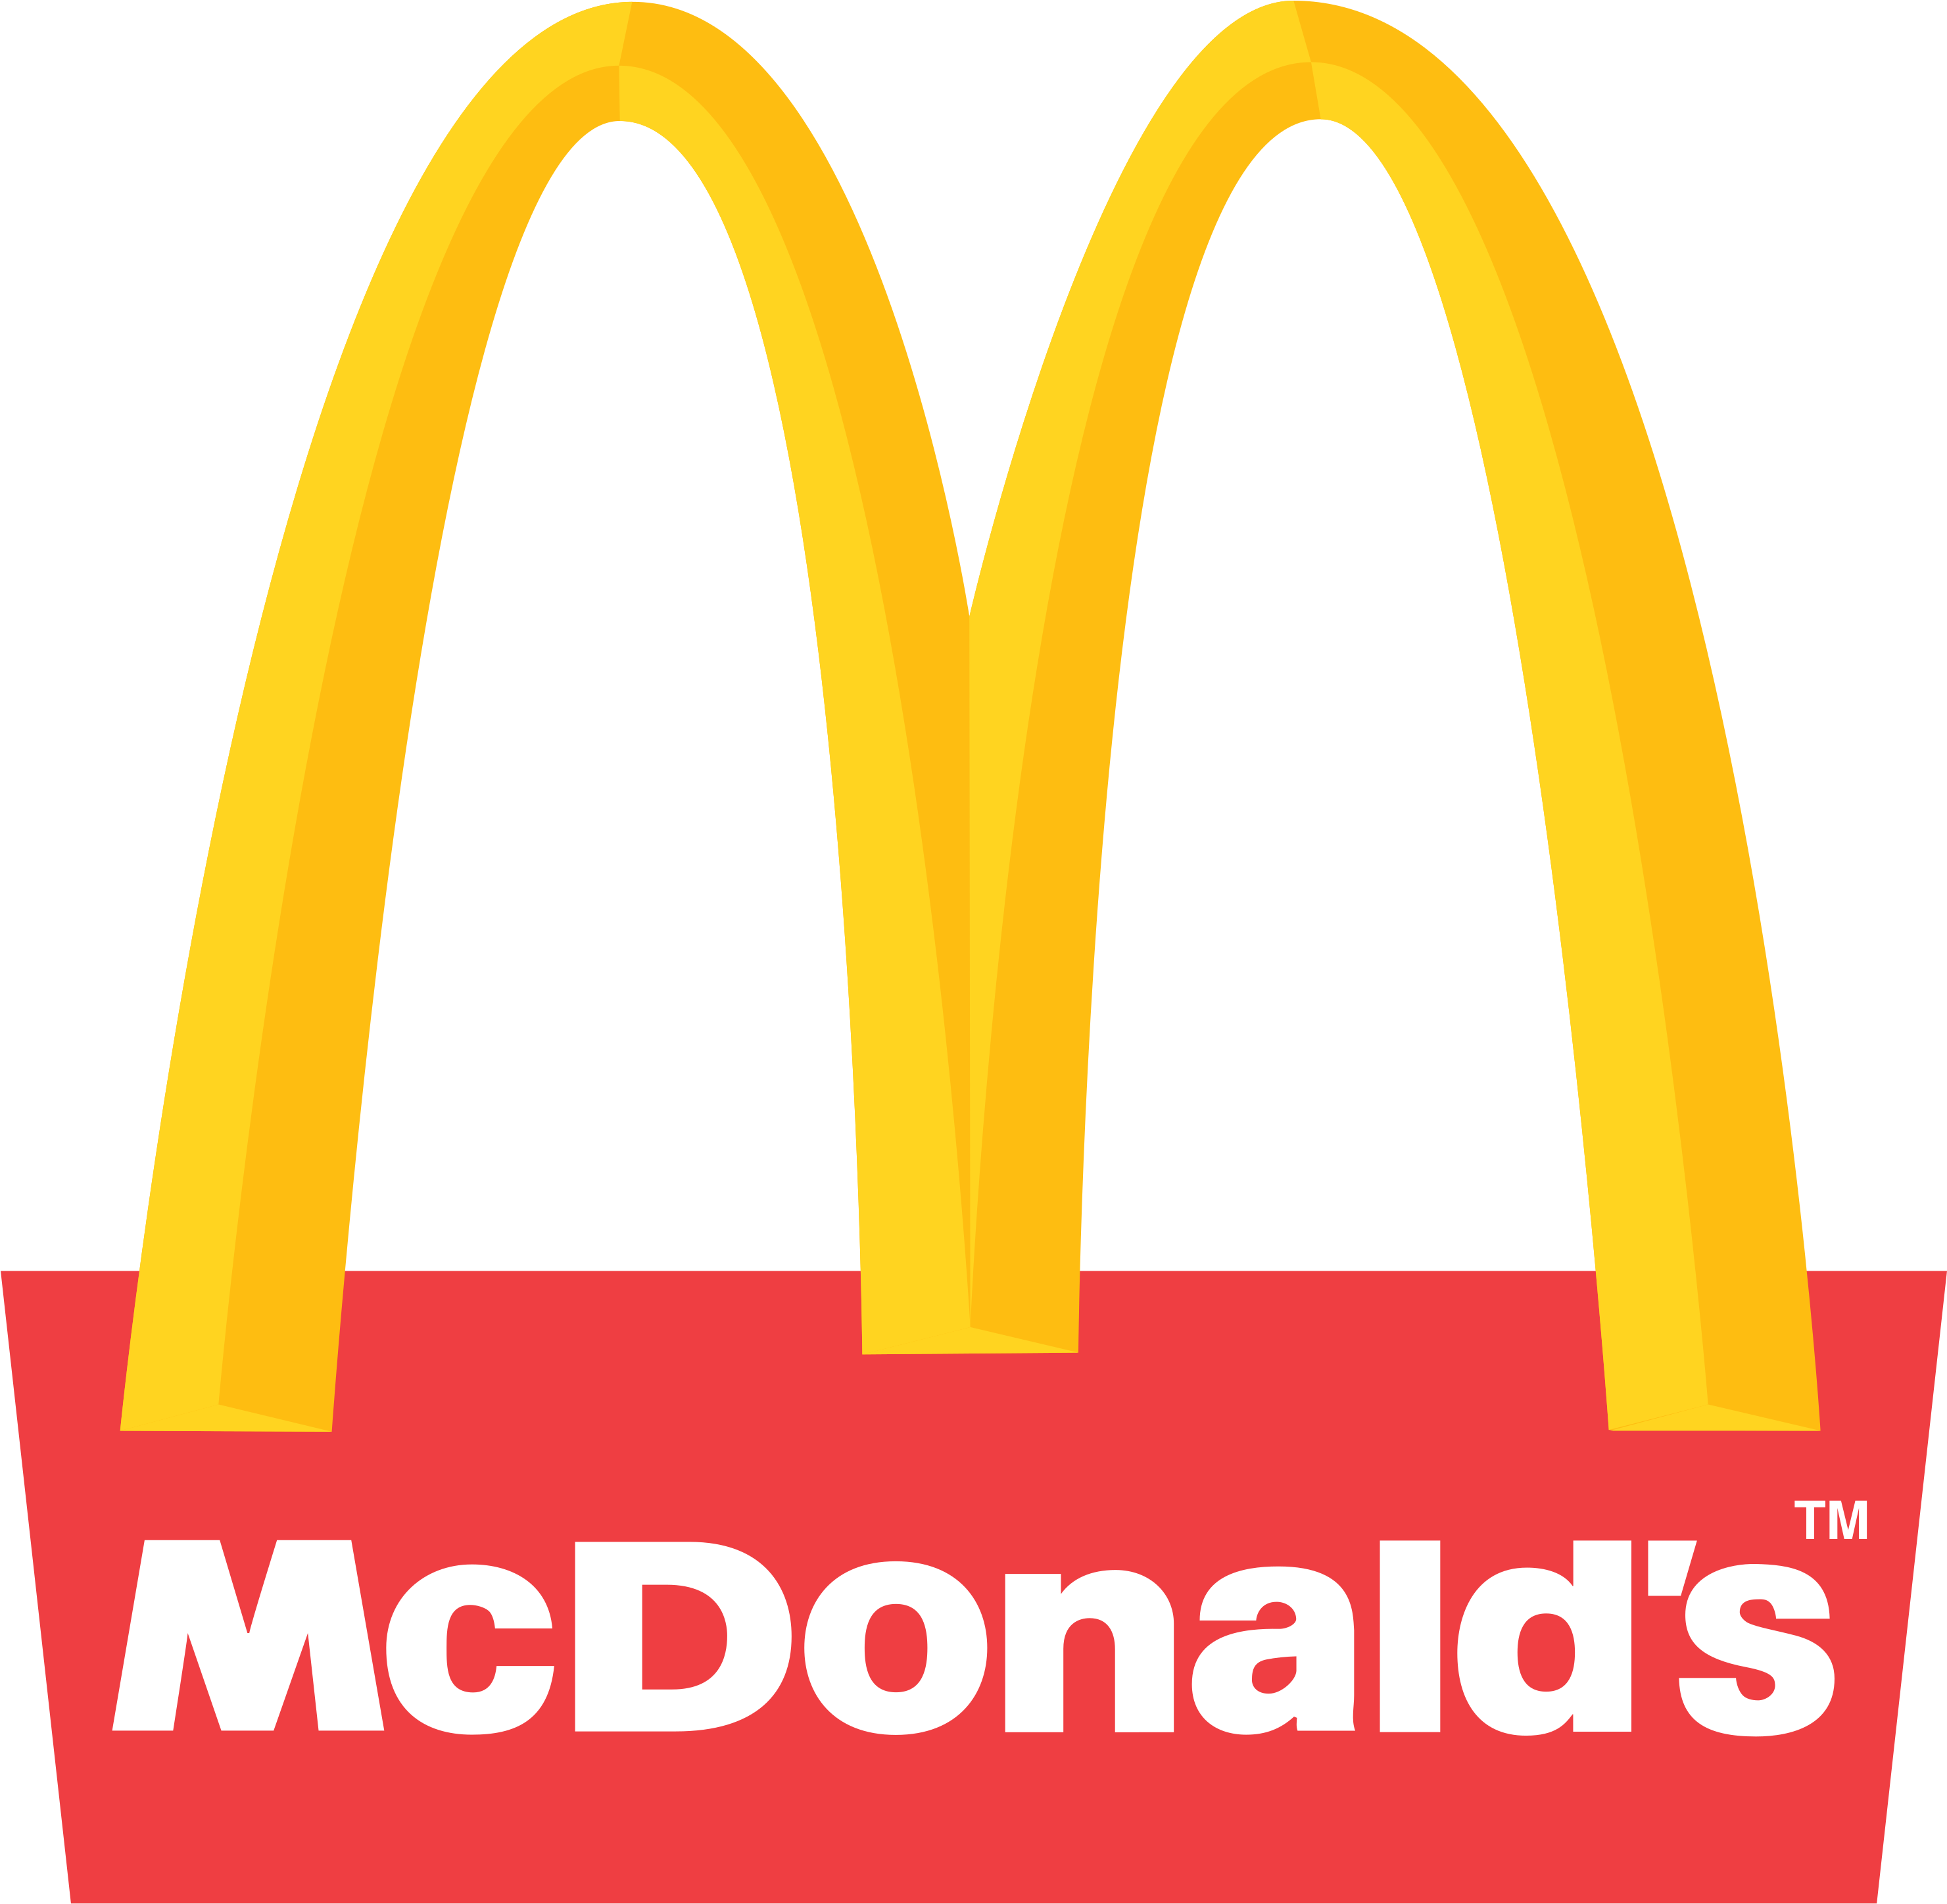 Mcdonalds clipart lgo. Mcdonald s logo png